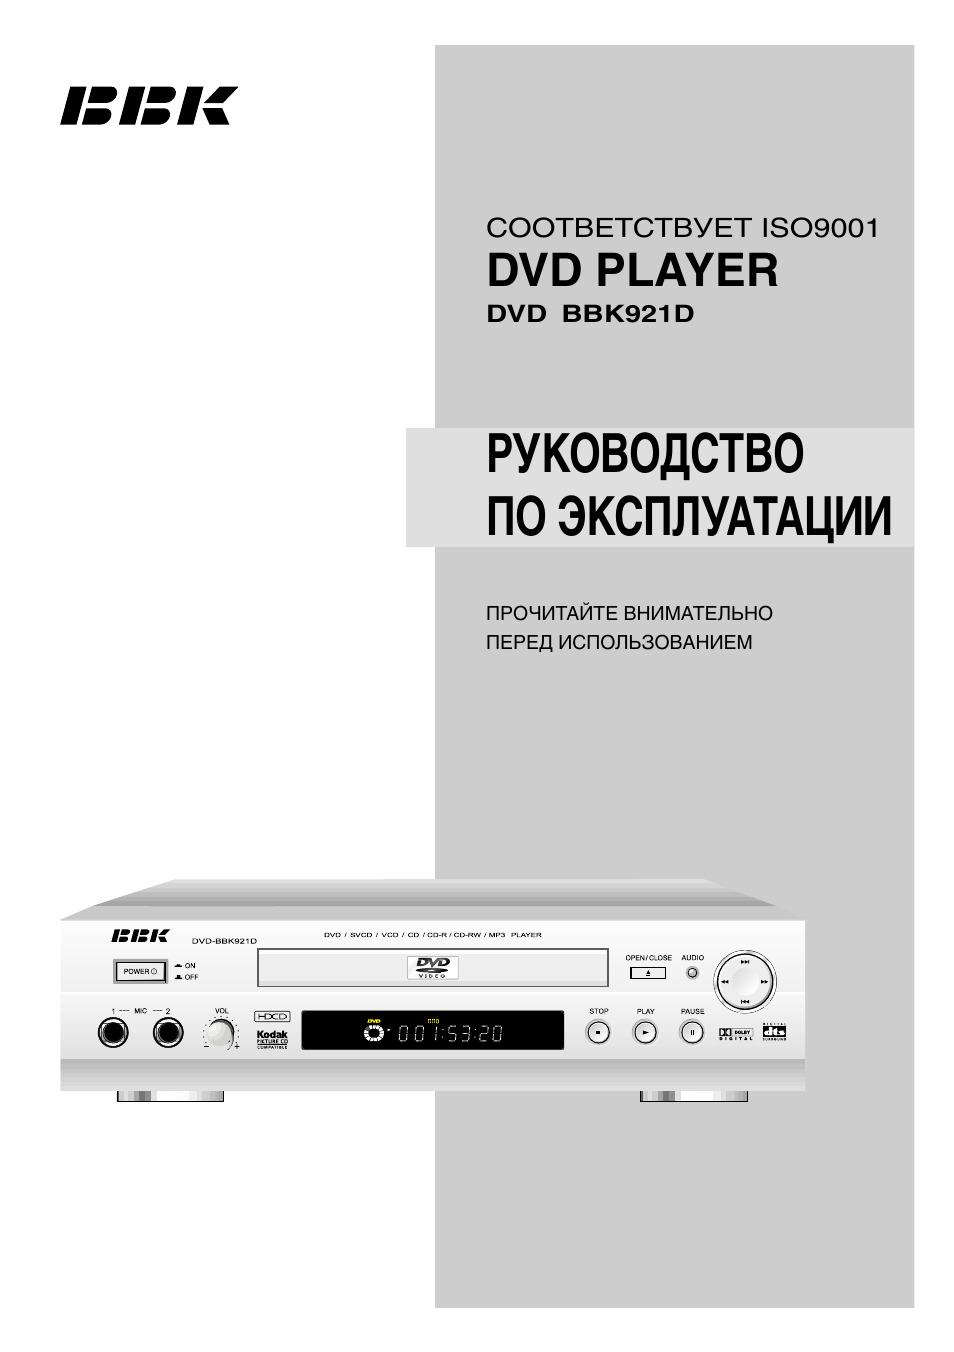 Телевизор bbk инструкция. DVD BBK 921d. DVD плеер BBK 921. DVD плеер BBK 114. DVD плеер BBK 953.